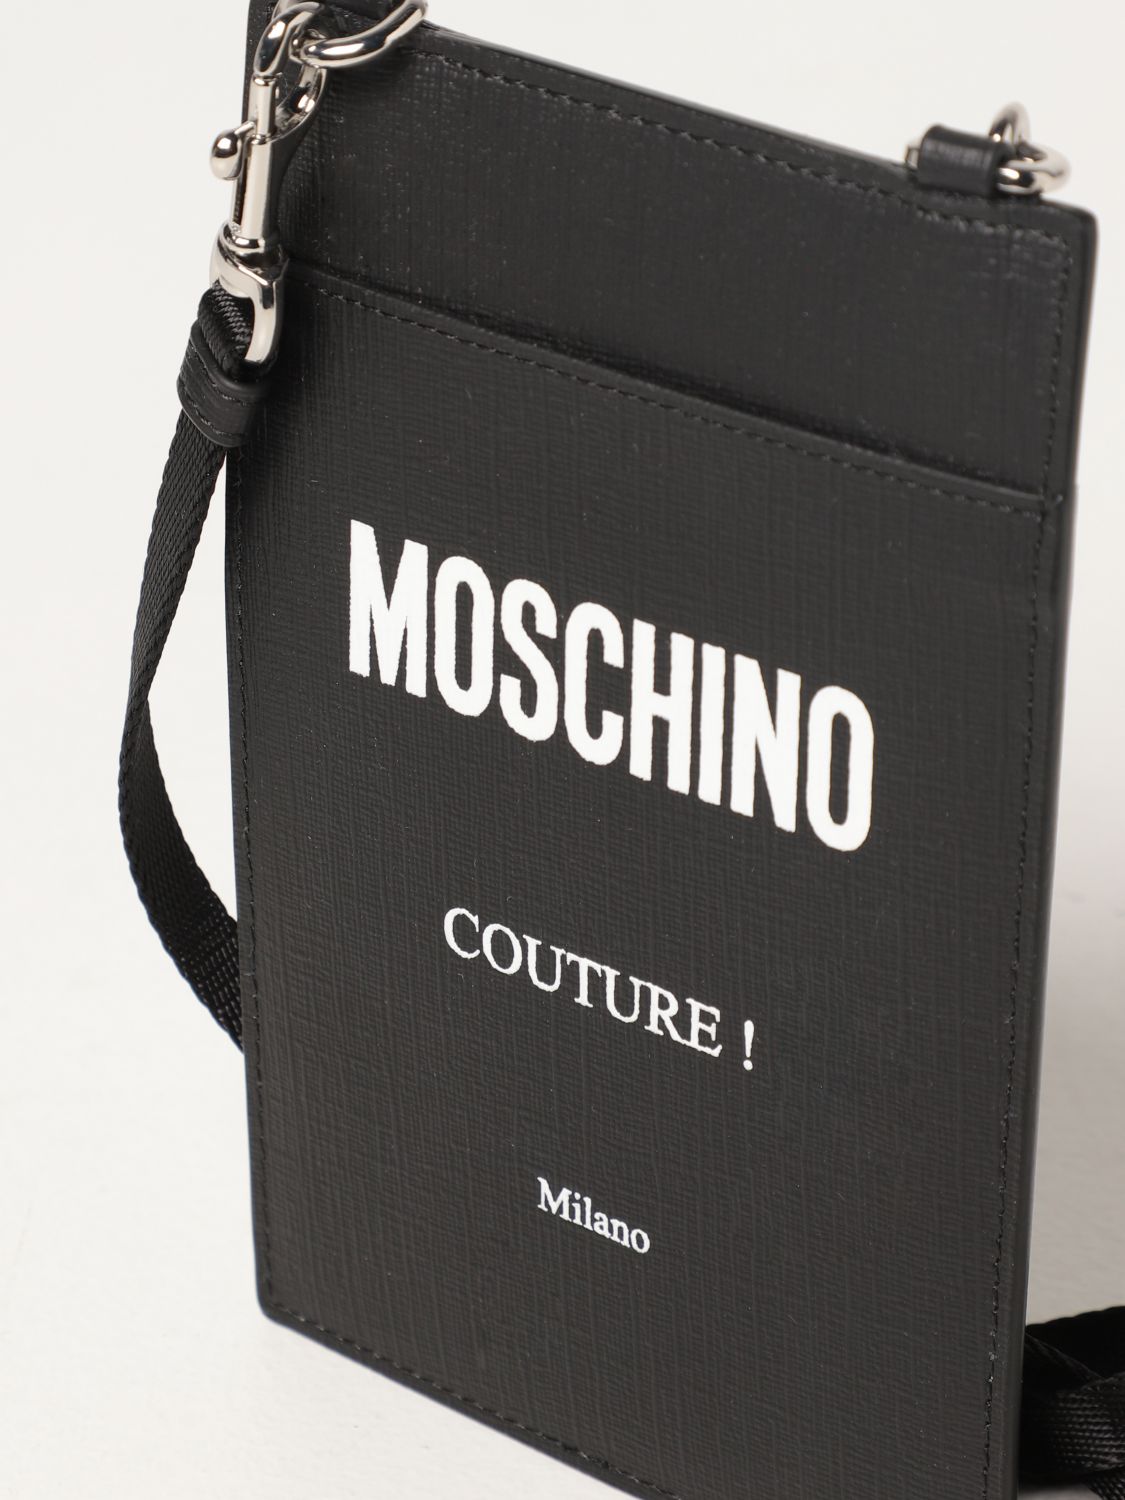 MOSCHINO COUTURE: Cartera para hombre, | Cartera Moschino Couture 81098210 en en GIGLIO.COM